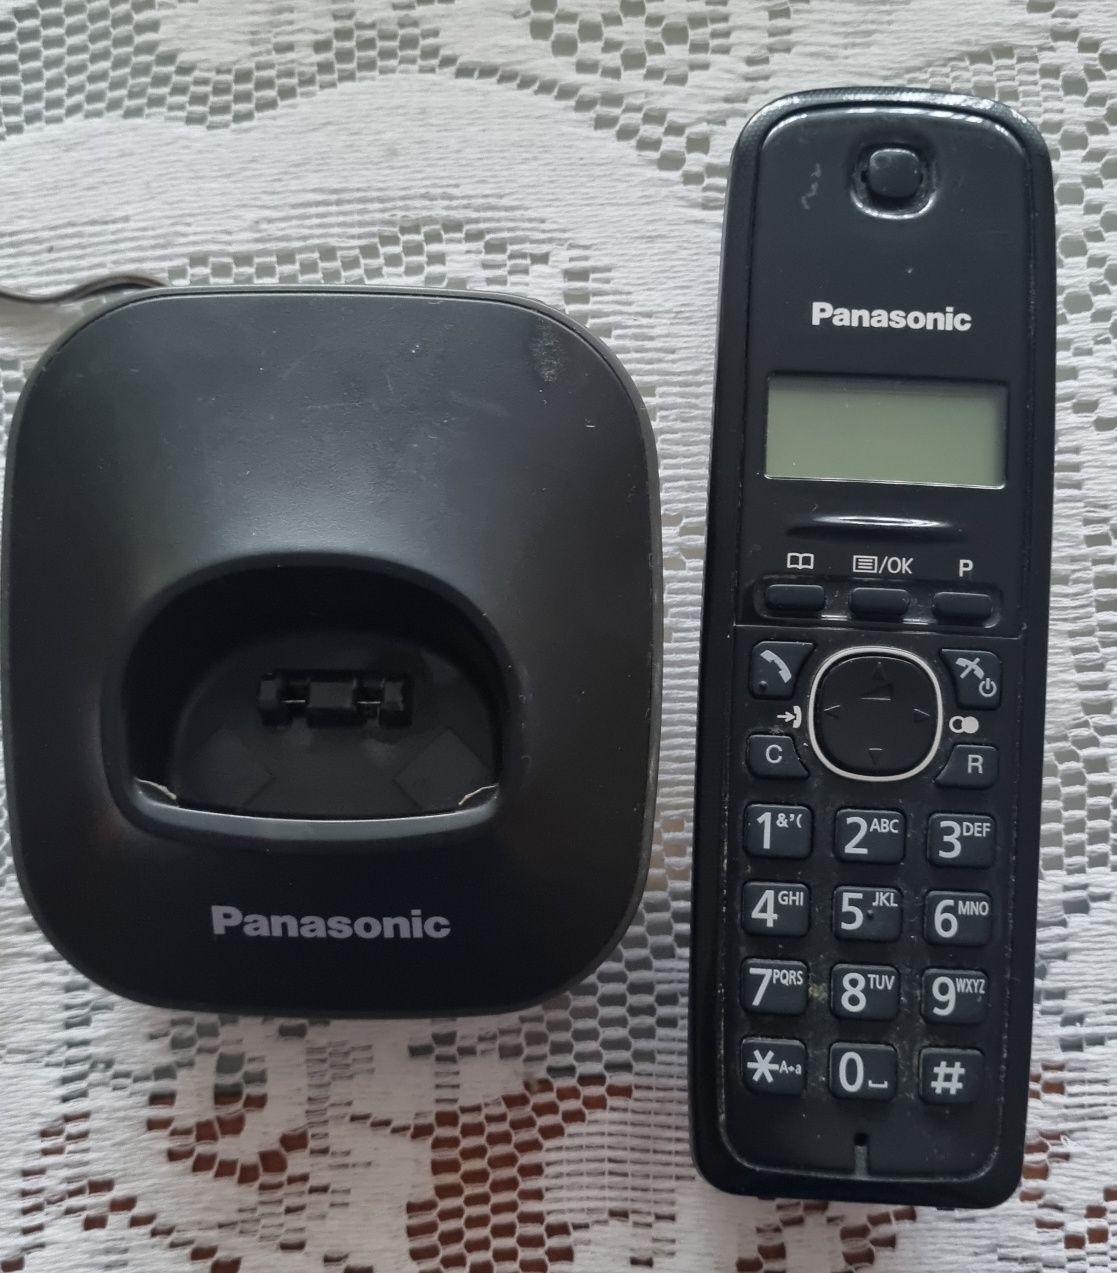 Dwa telefony bezprzewodowe